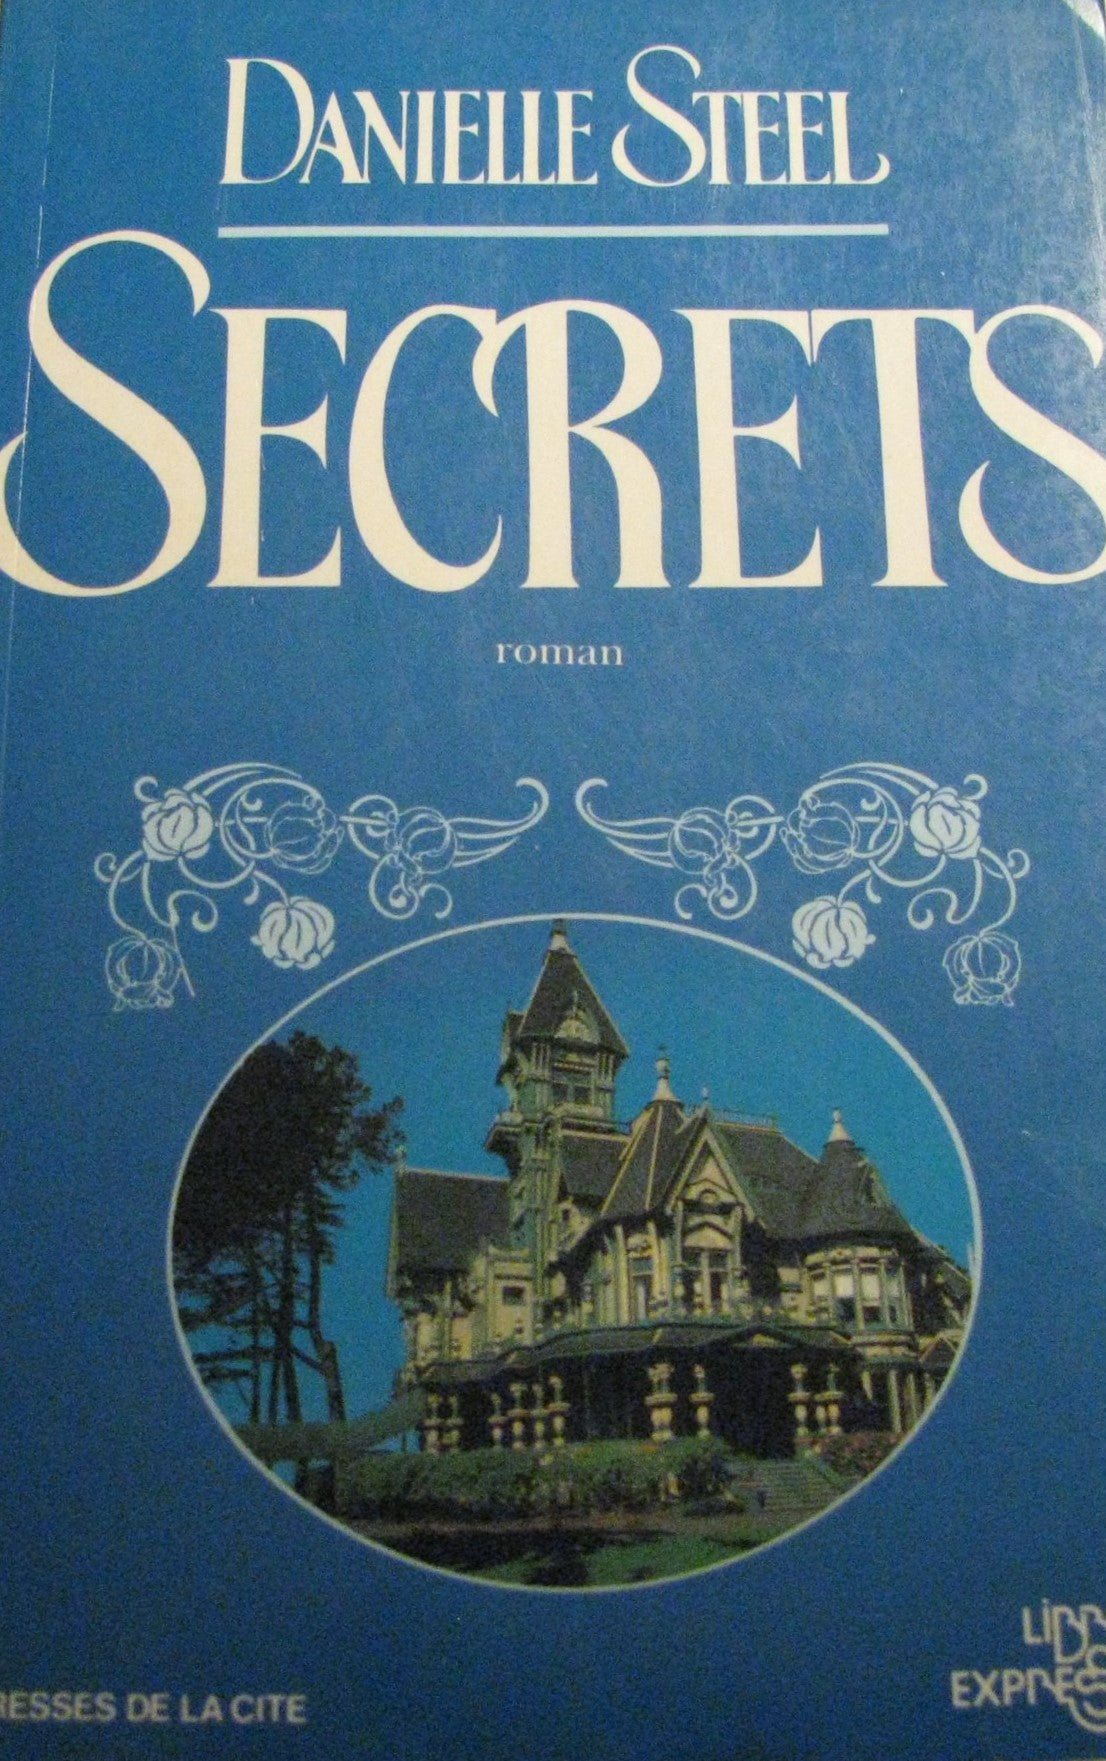 Secrets - Danielle Steel